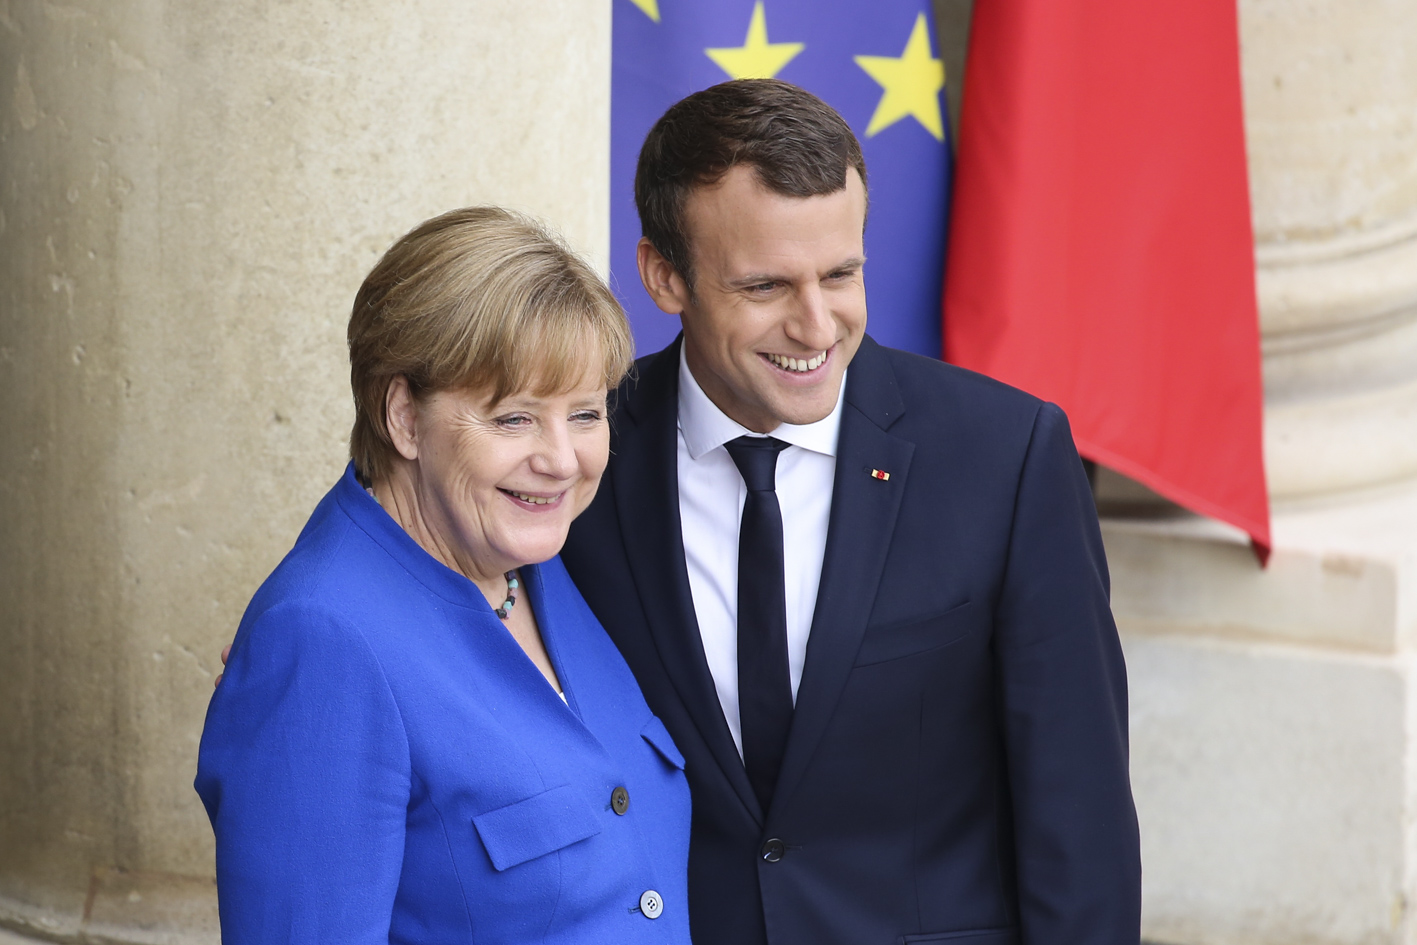 Макрон и Меркель подписали новый договор о сотрудничестве и интеграции 